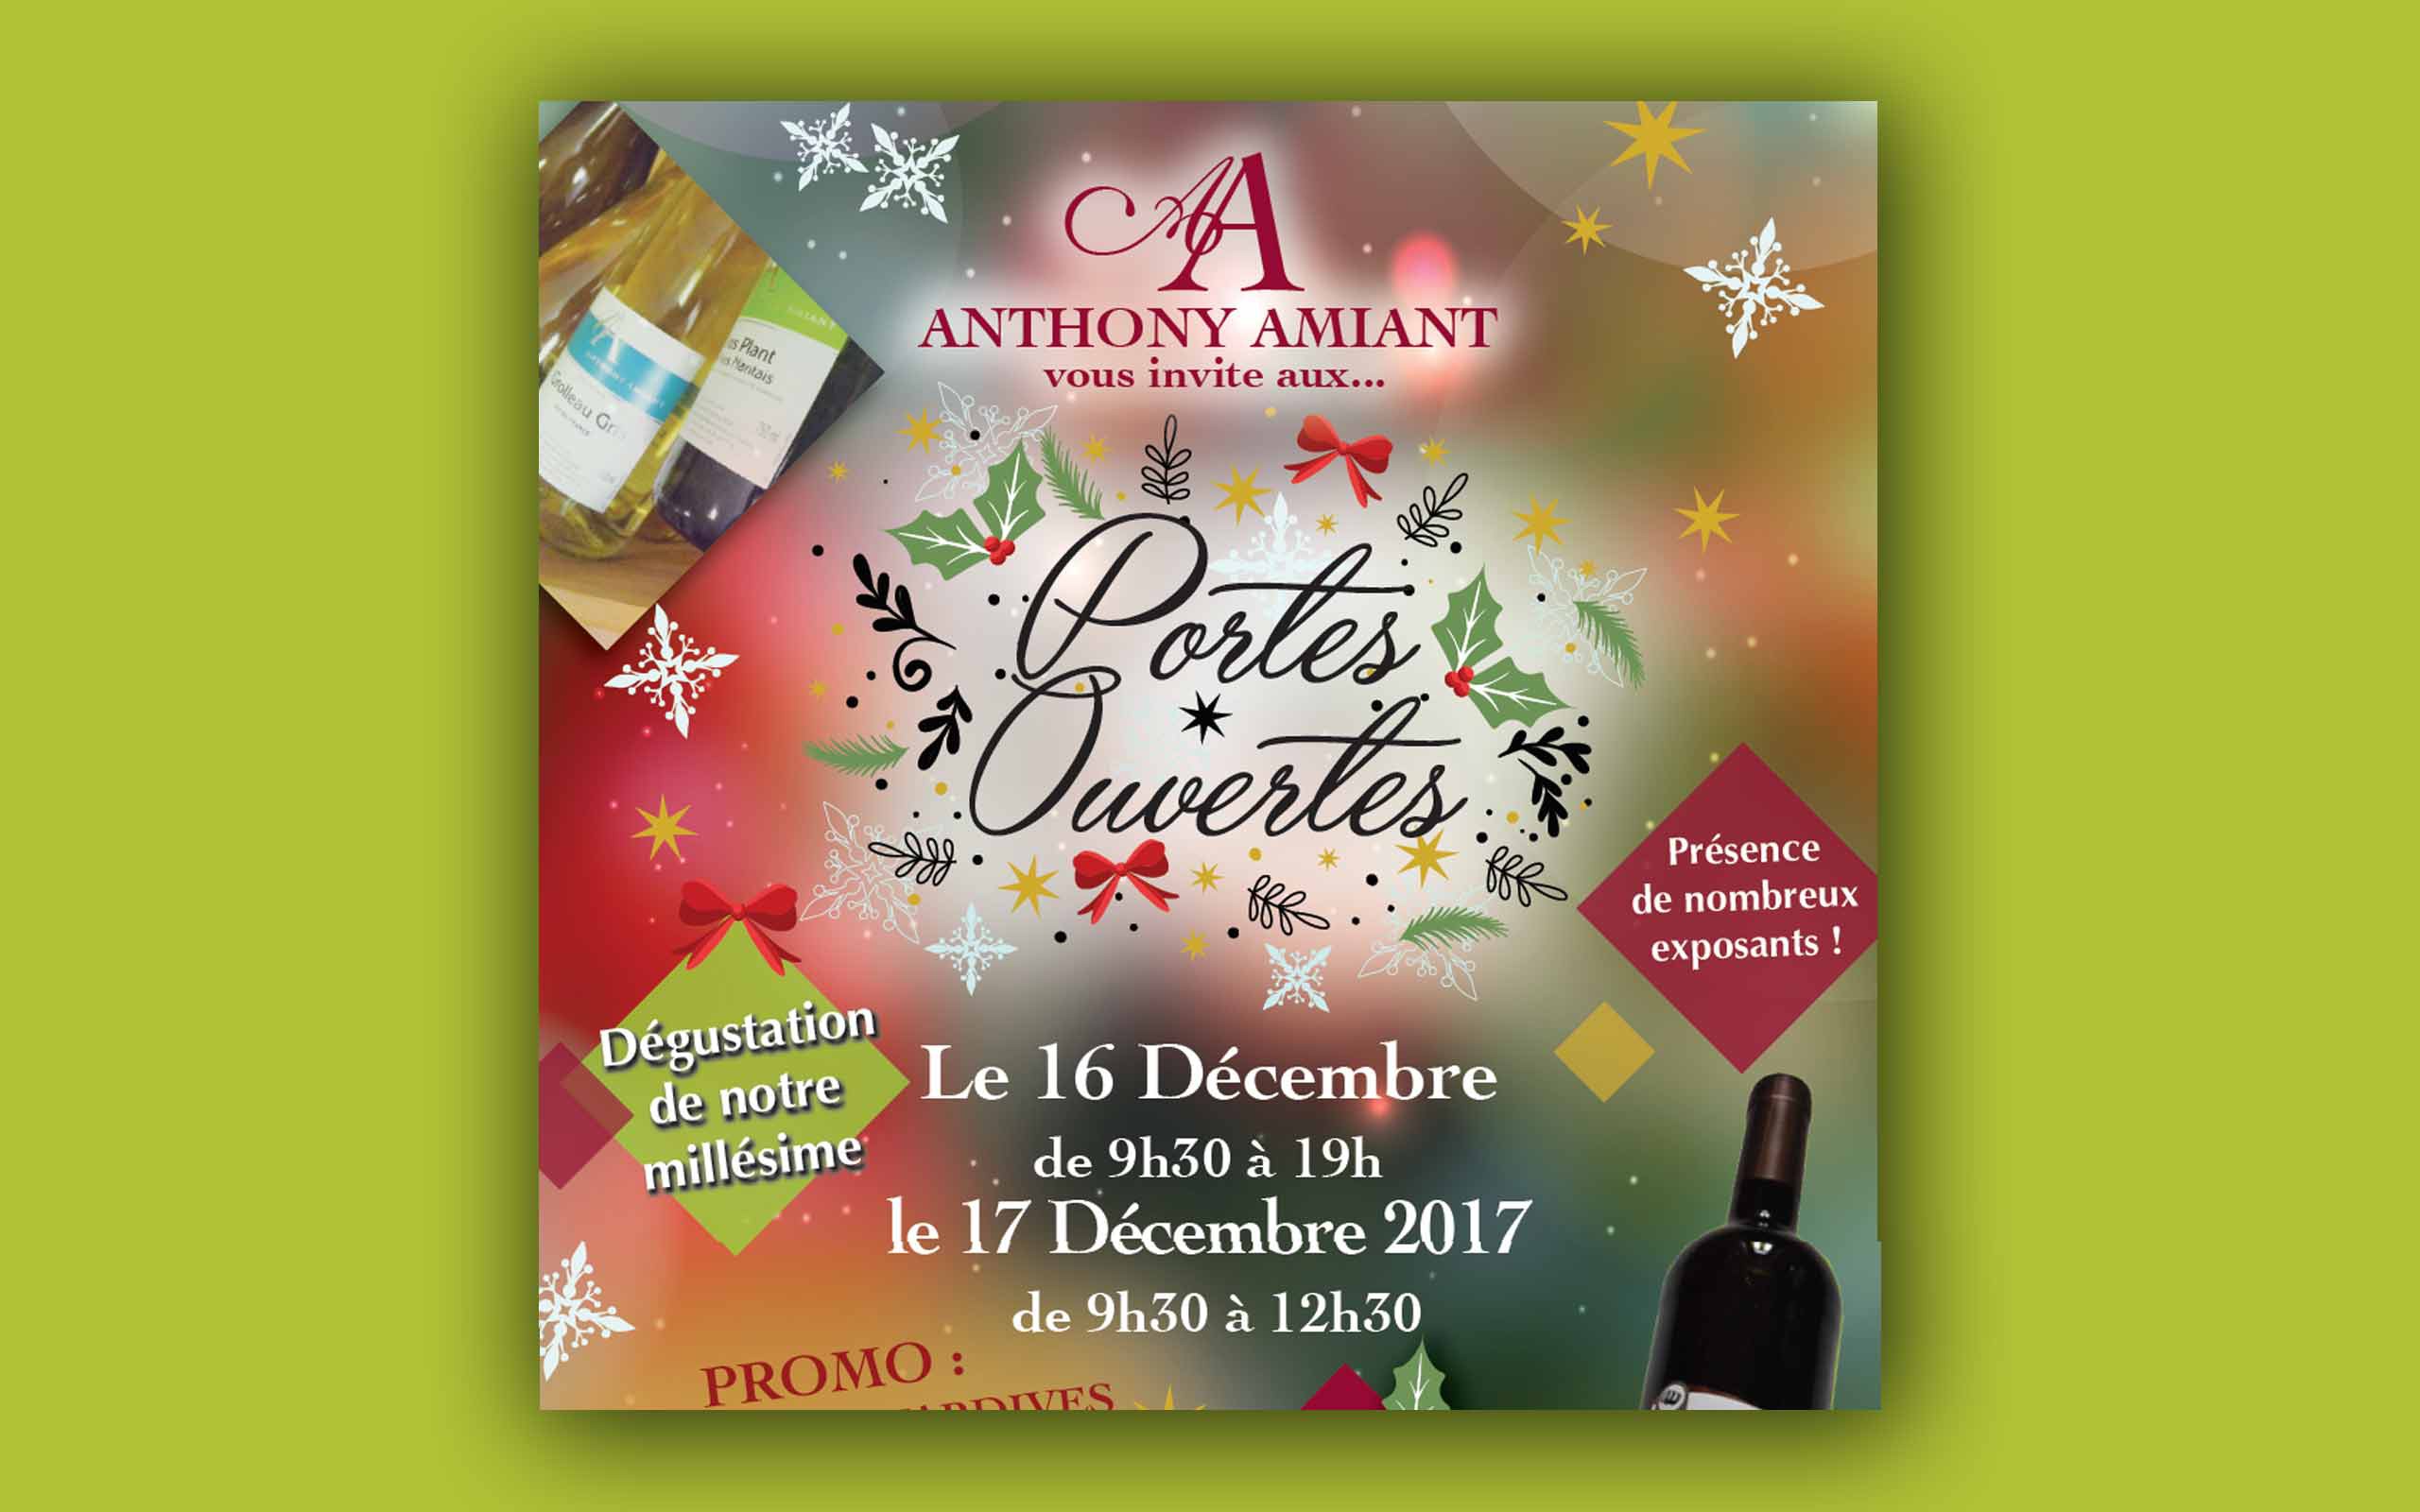 Anthony Amiant Portes Ouvertes décembre 2017 - viticulteurs St Mars de Coutais